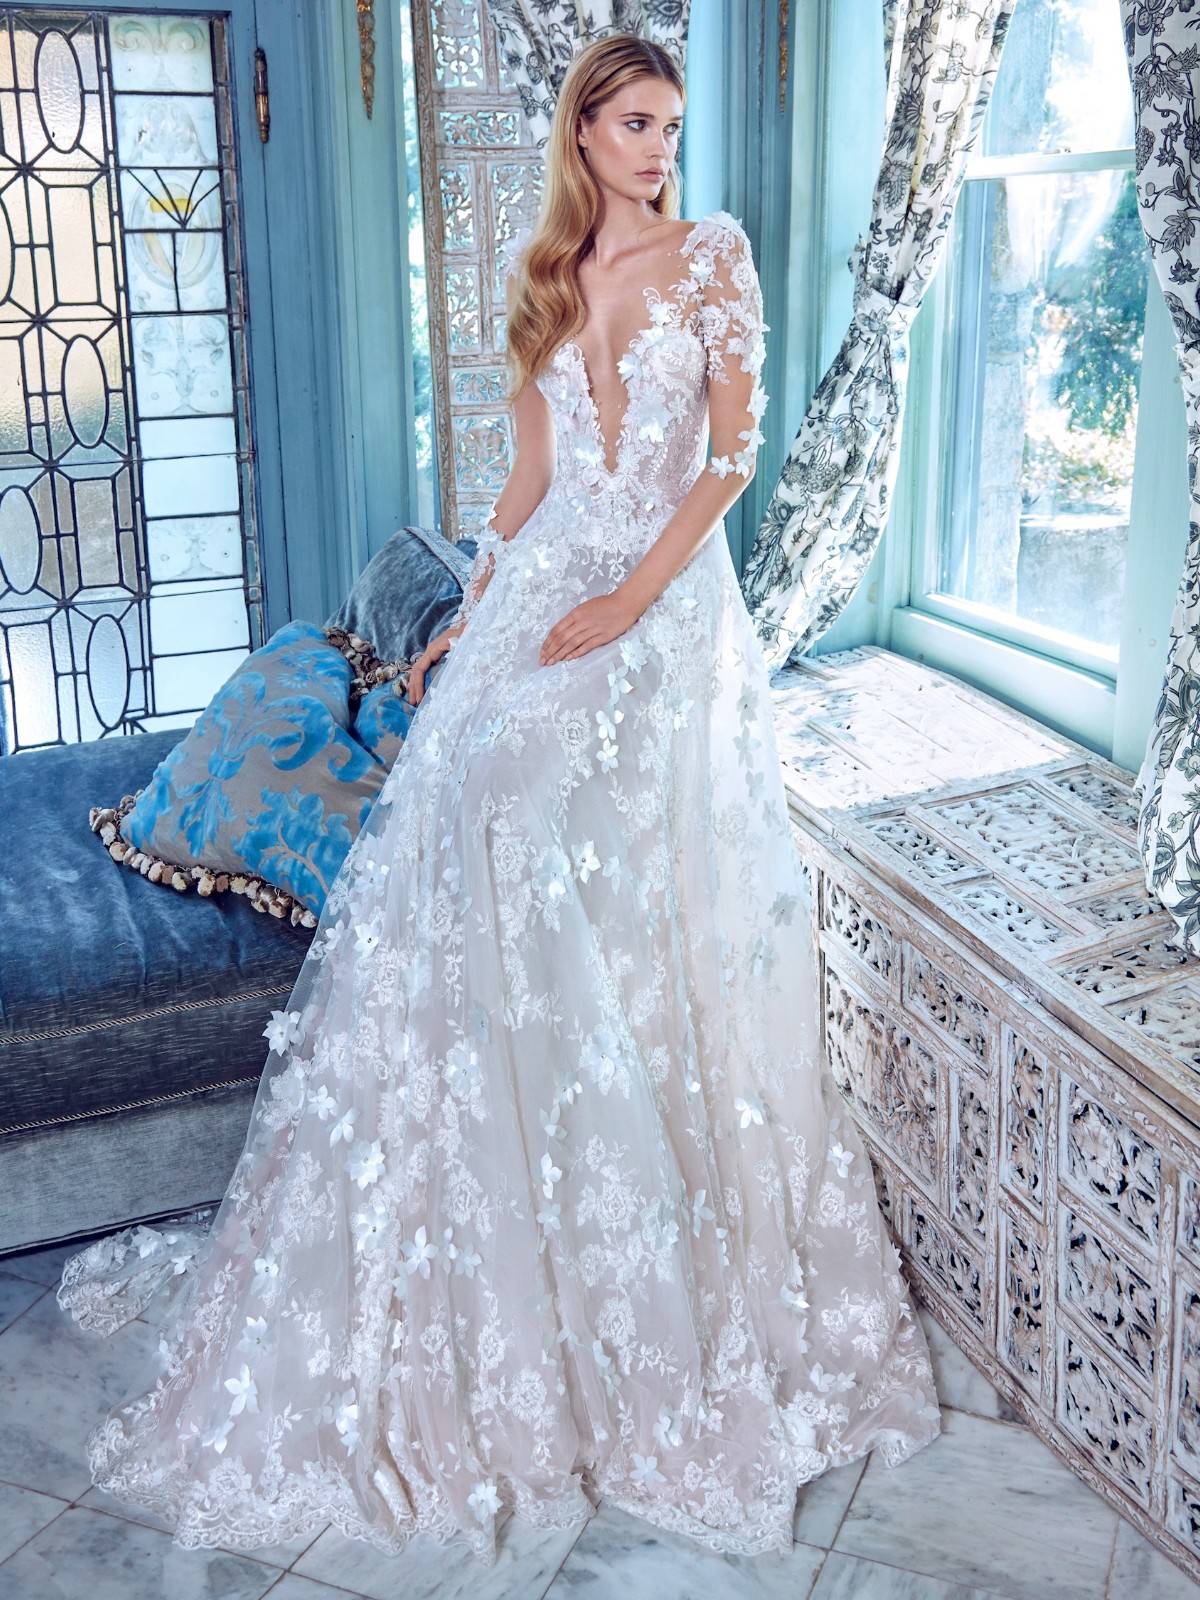 2018婚纱样册版设计_GattiNolli的品牌设计充满活力婚纱与礼服